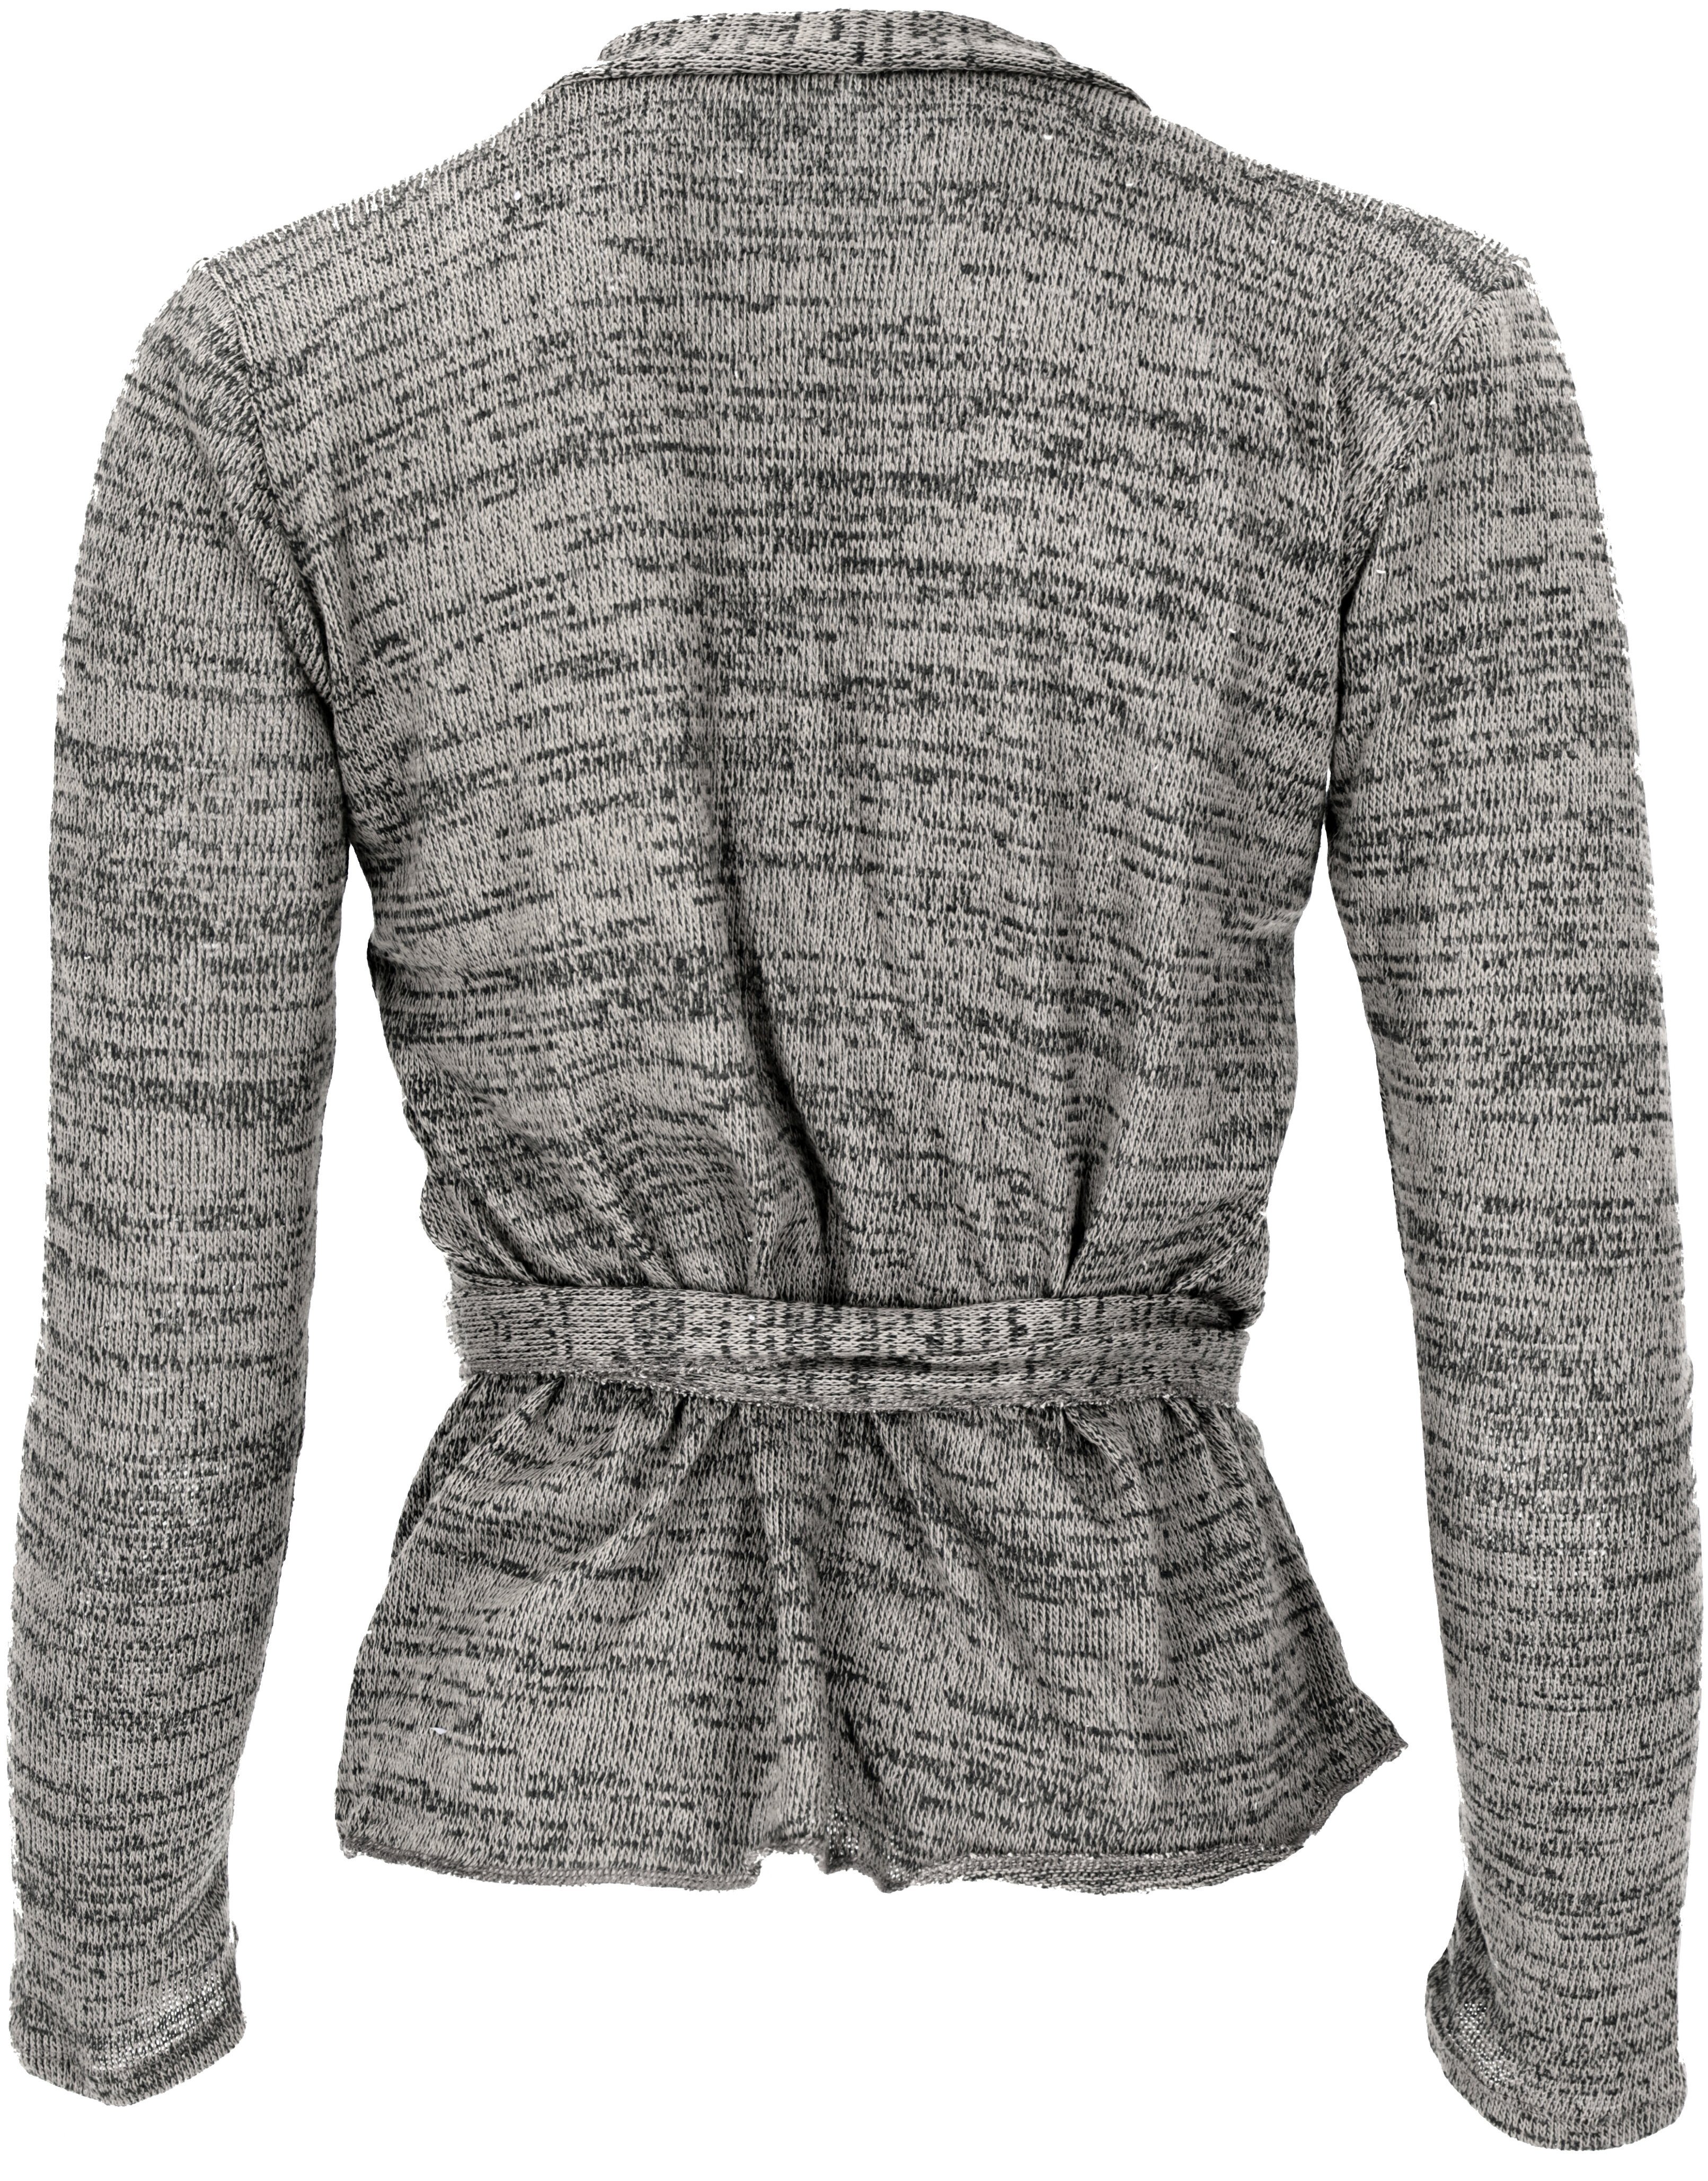 Wickelshirt, Guru-Shop melliert alternative Yogashirt, Feinstrick Longsleeve grau/schwarz Bekleidung Langarmshirt..